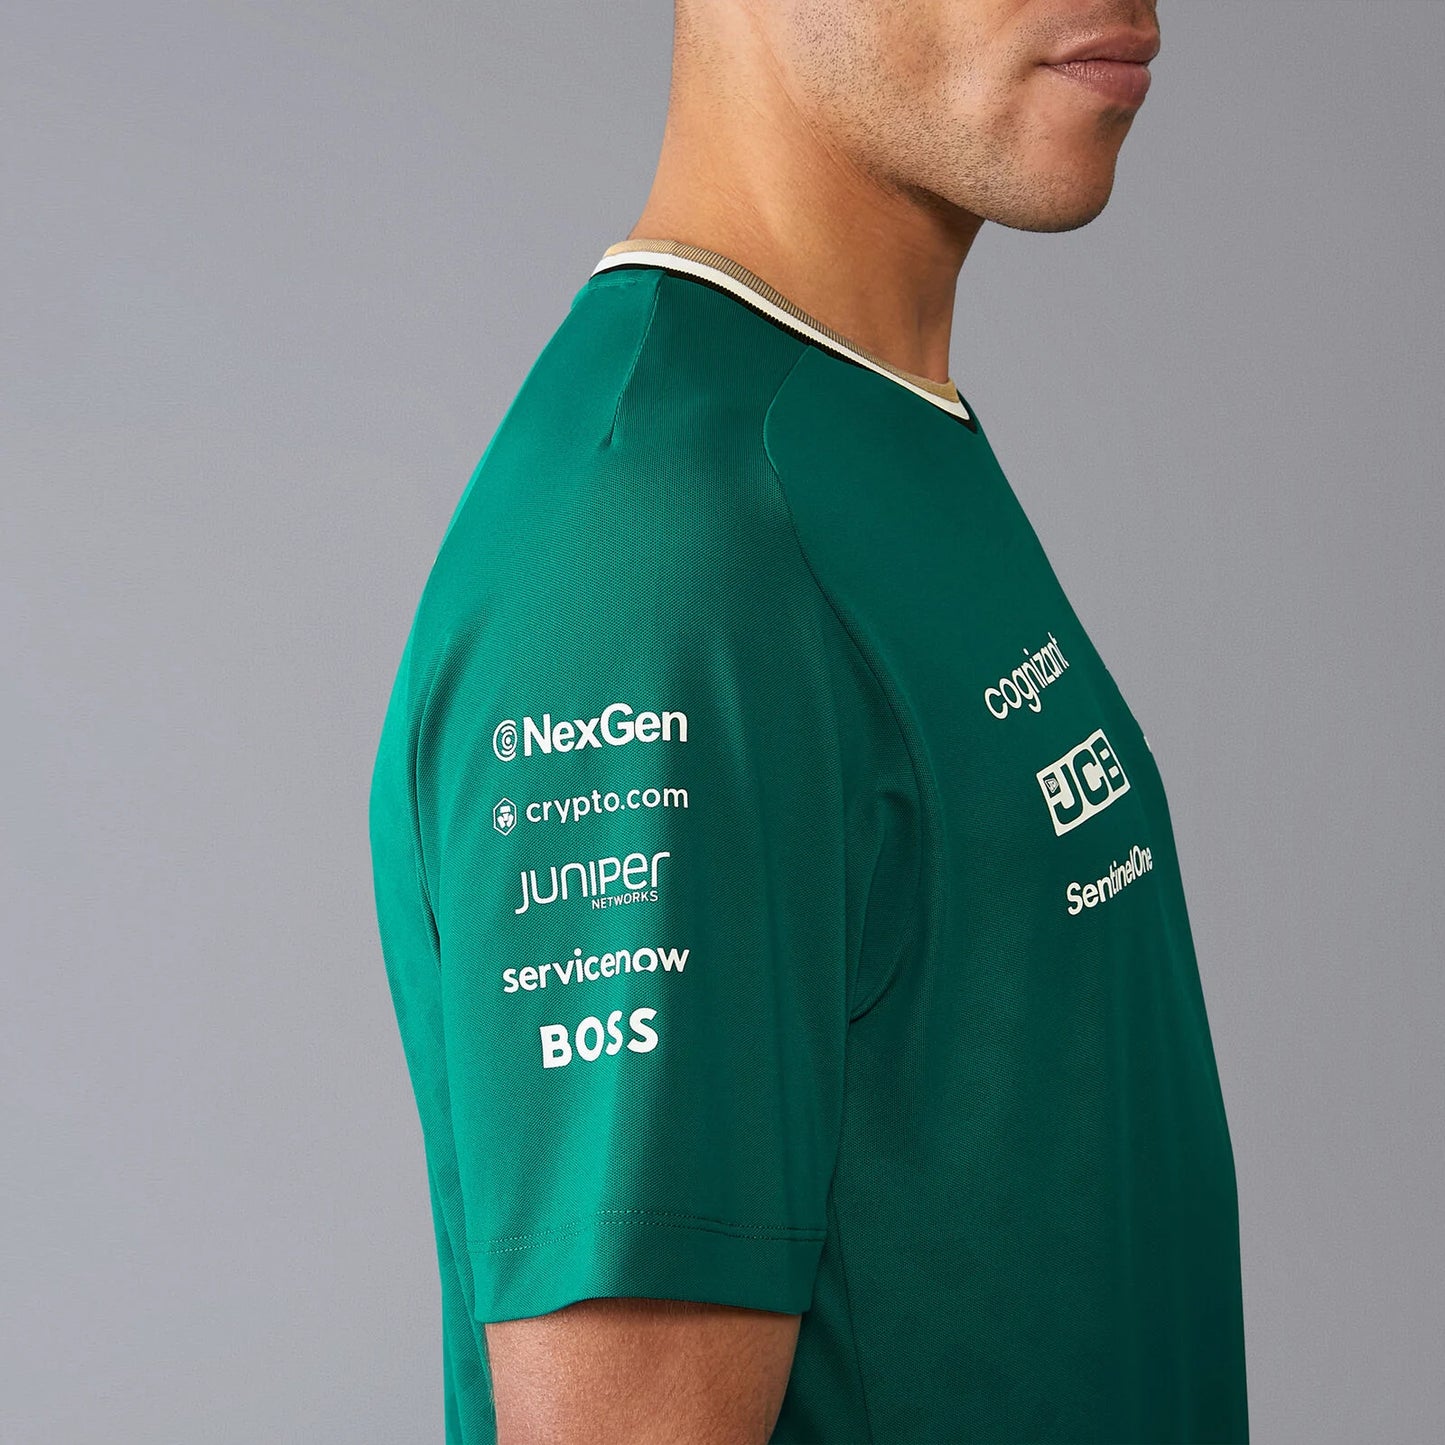 Pre-Order：Aston Martin F1 Team 2024 Team T-shirt